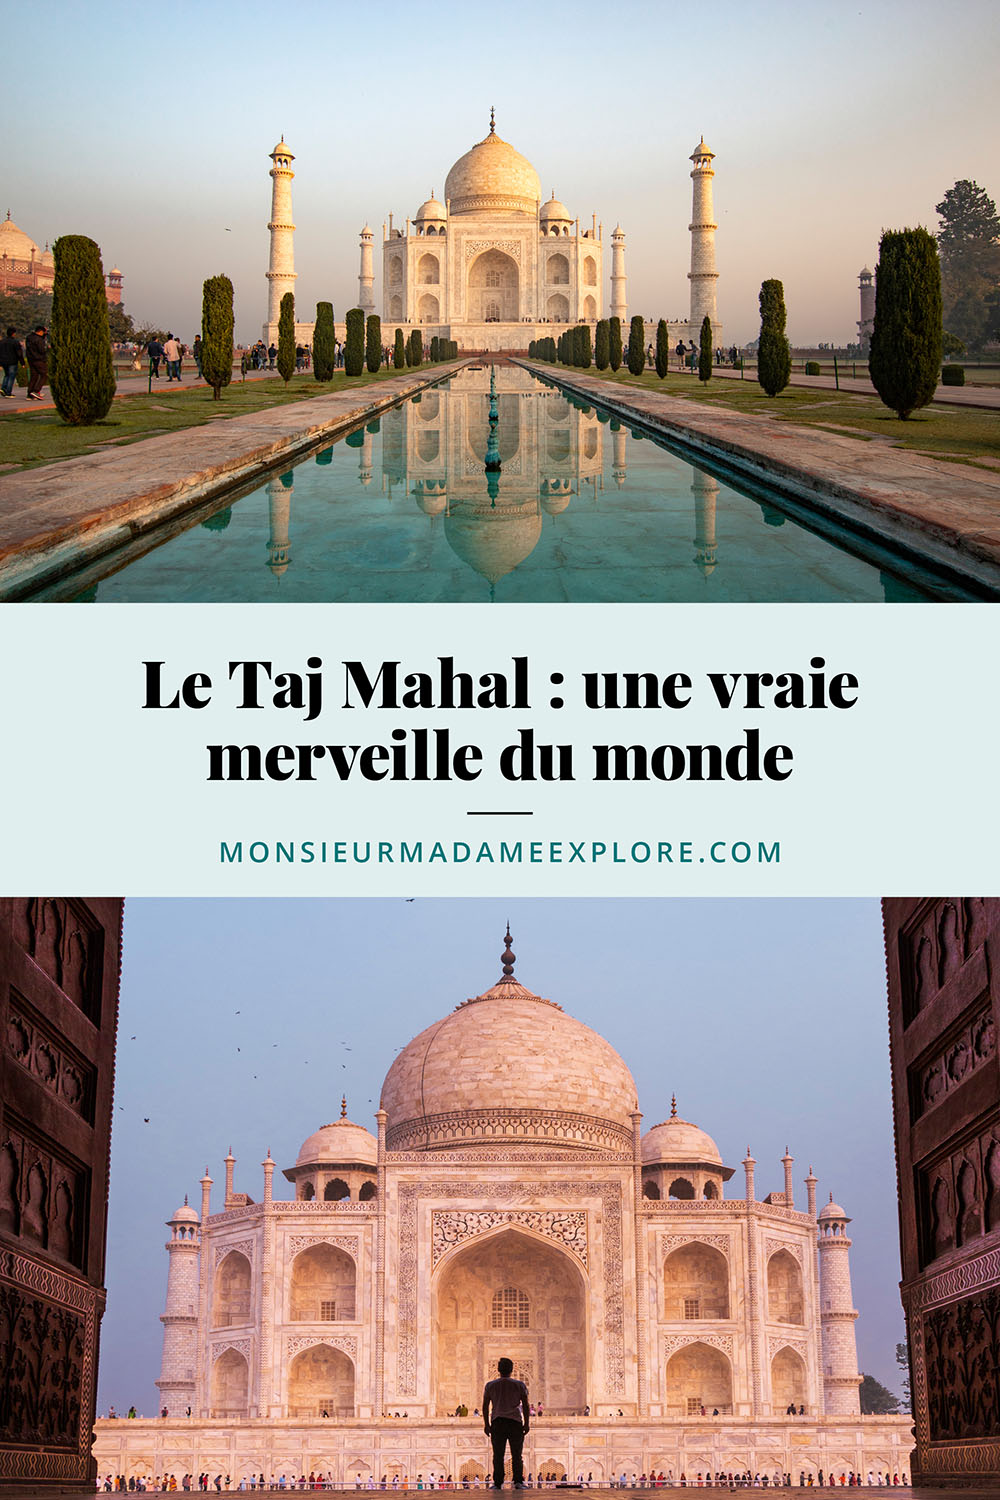 Le Taj Mahal : une vraie merveille du monde, Monsieur+Madame Explore, Blogue de voyage, India / Visit the Taj Mahal, India